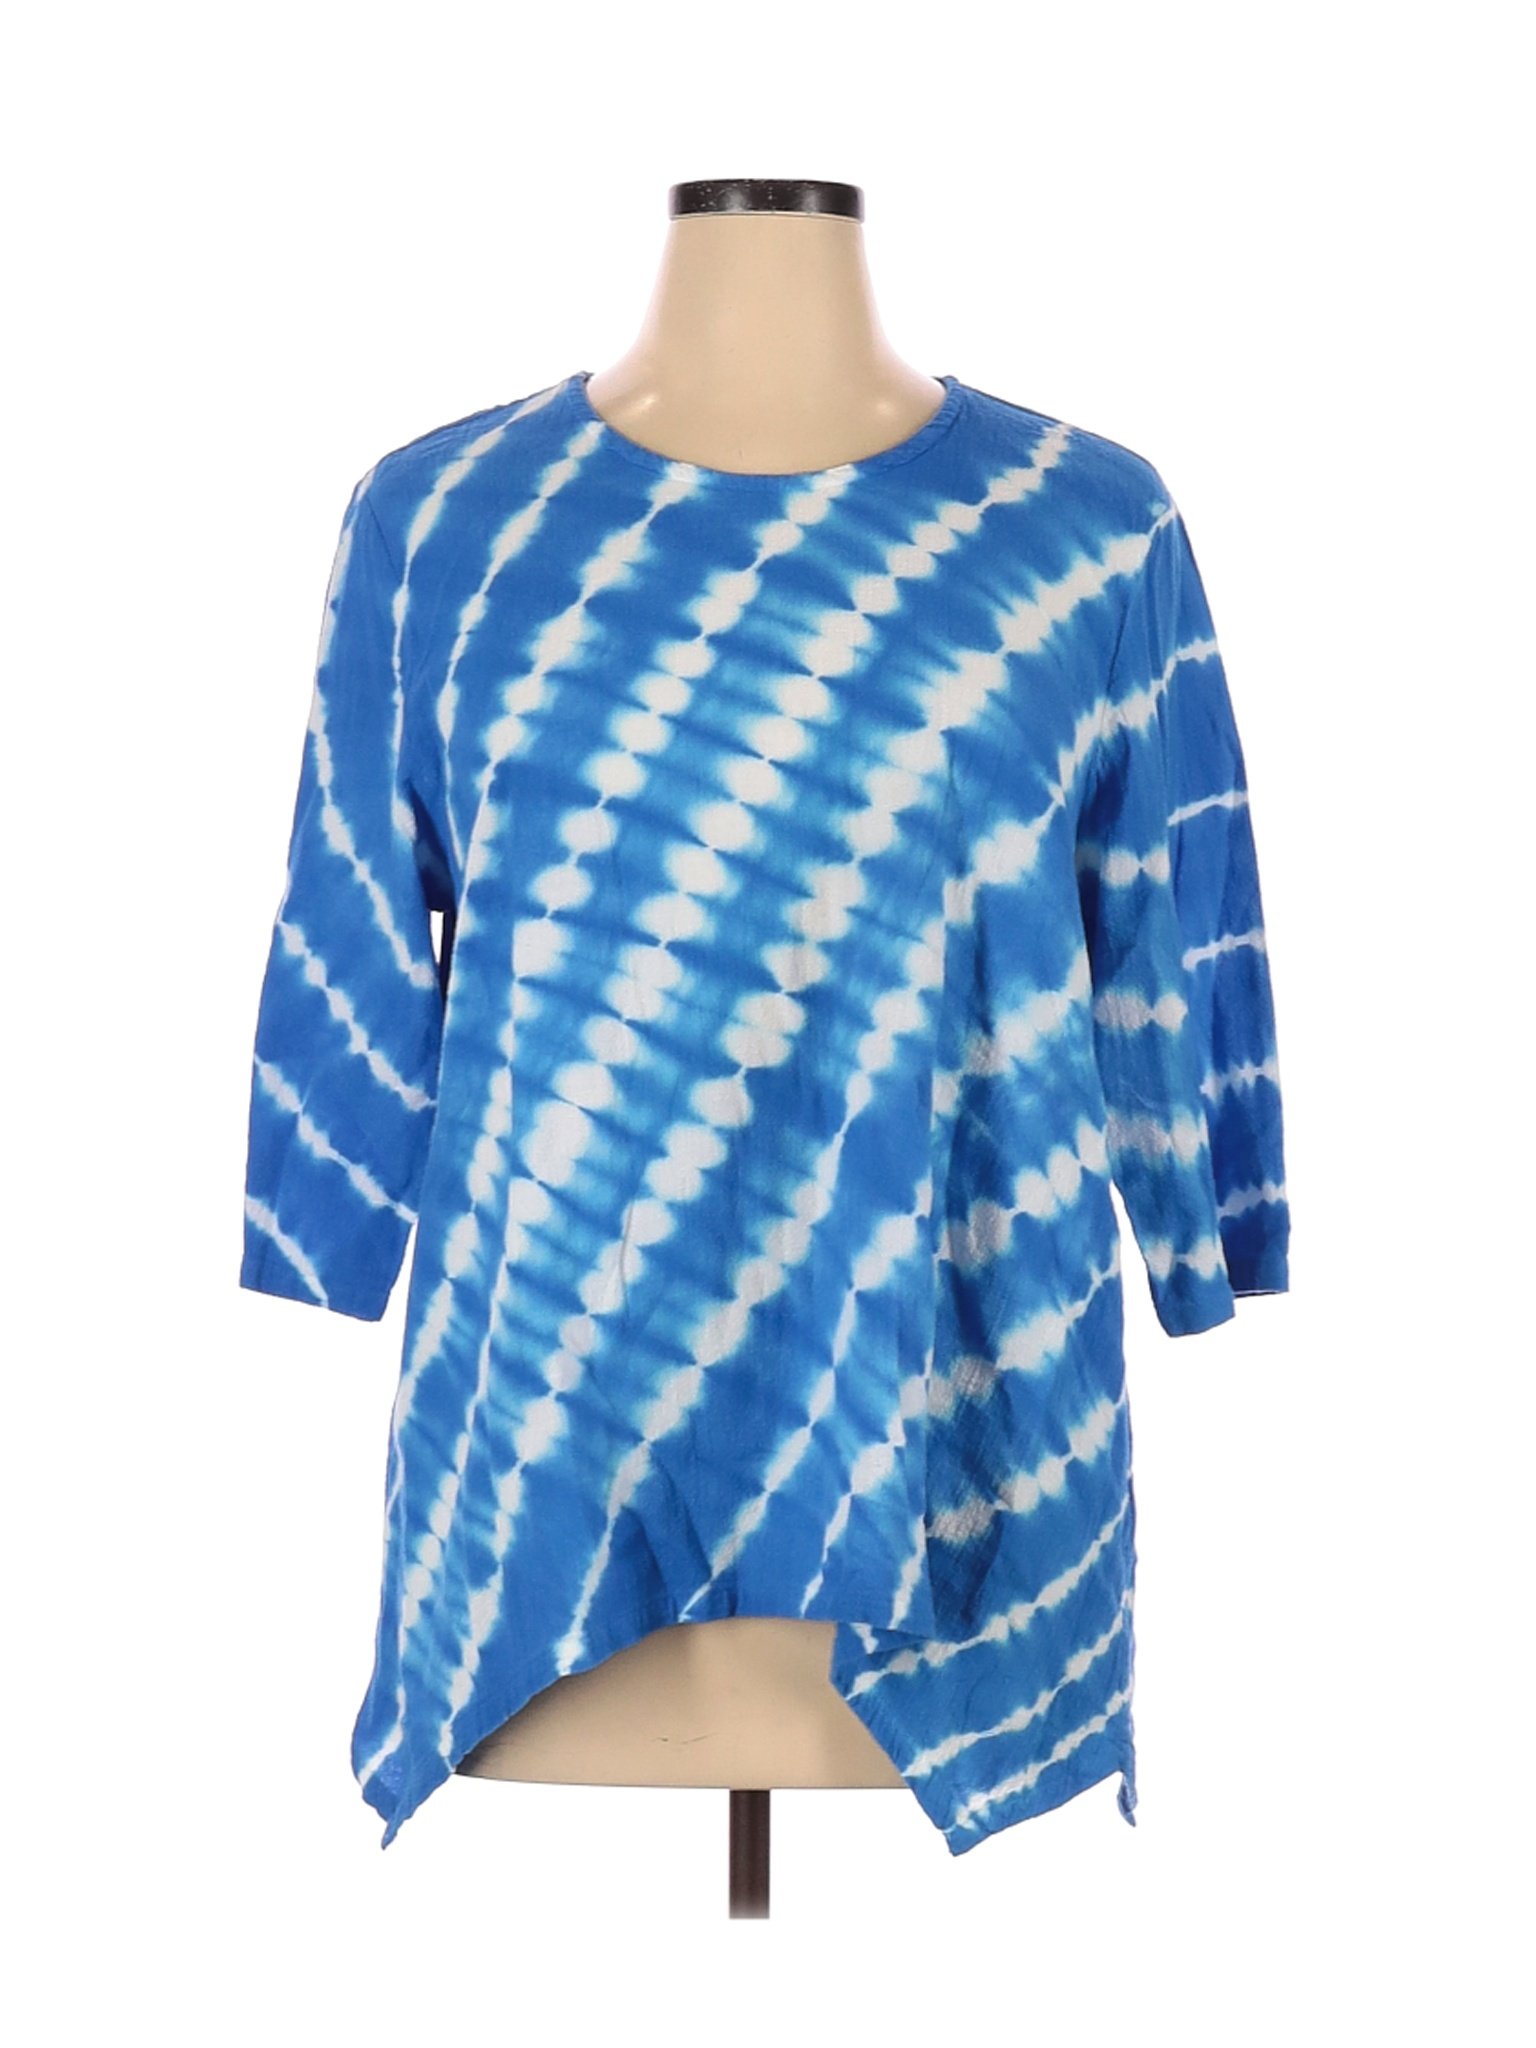 Lulu-B Women Blue 3/4 Sleeve Blouse XL | eBay